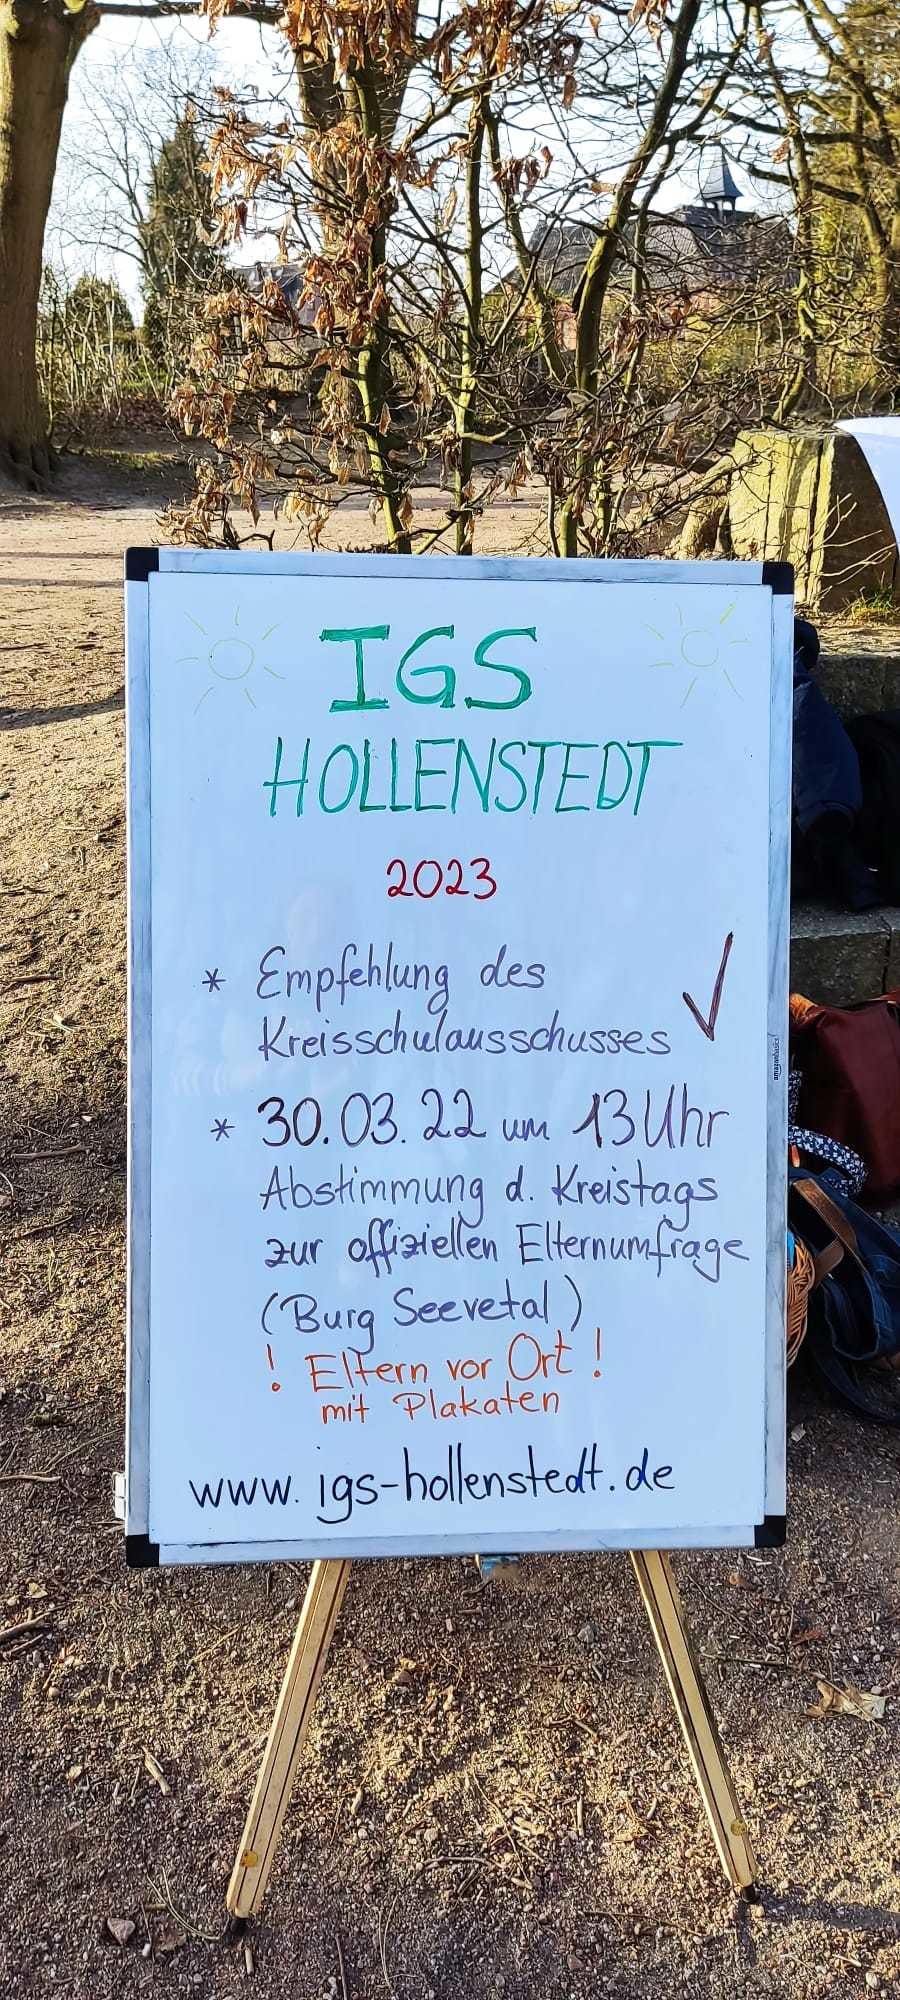 IGS Holenstedt